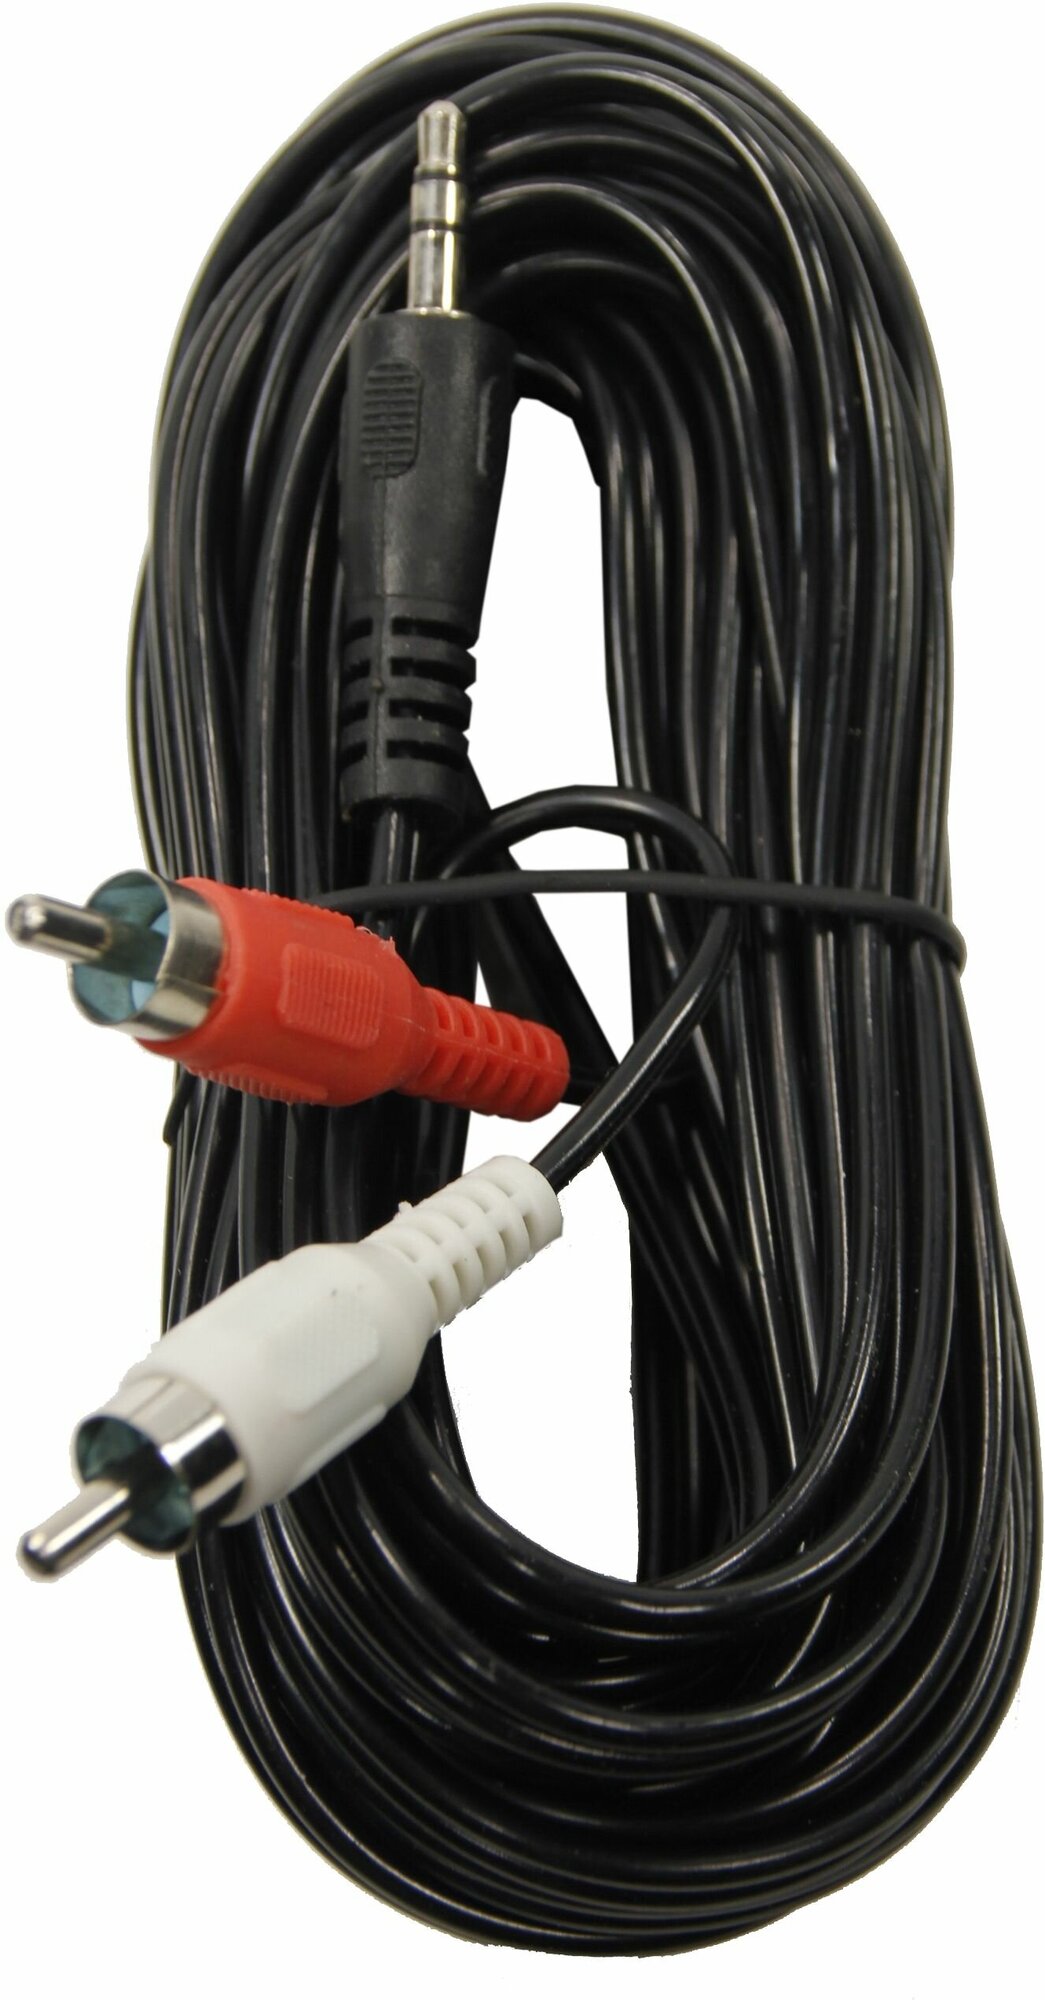 Аудио кабель AUX, переходник TWIST: тюльпаны 2RCA-3.5 мм mini jack, 5 метров